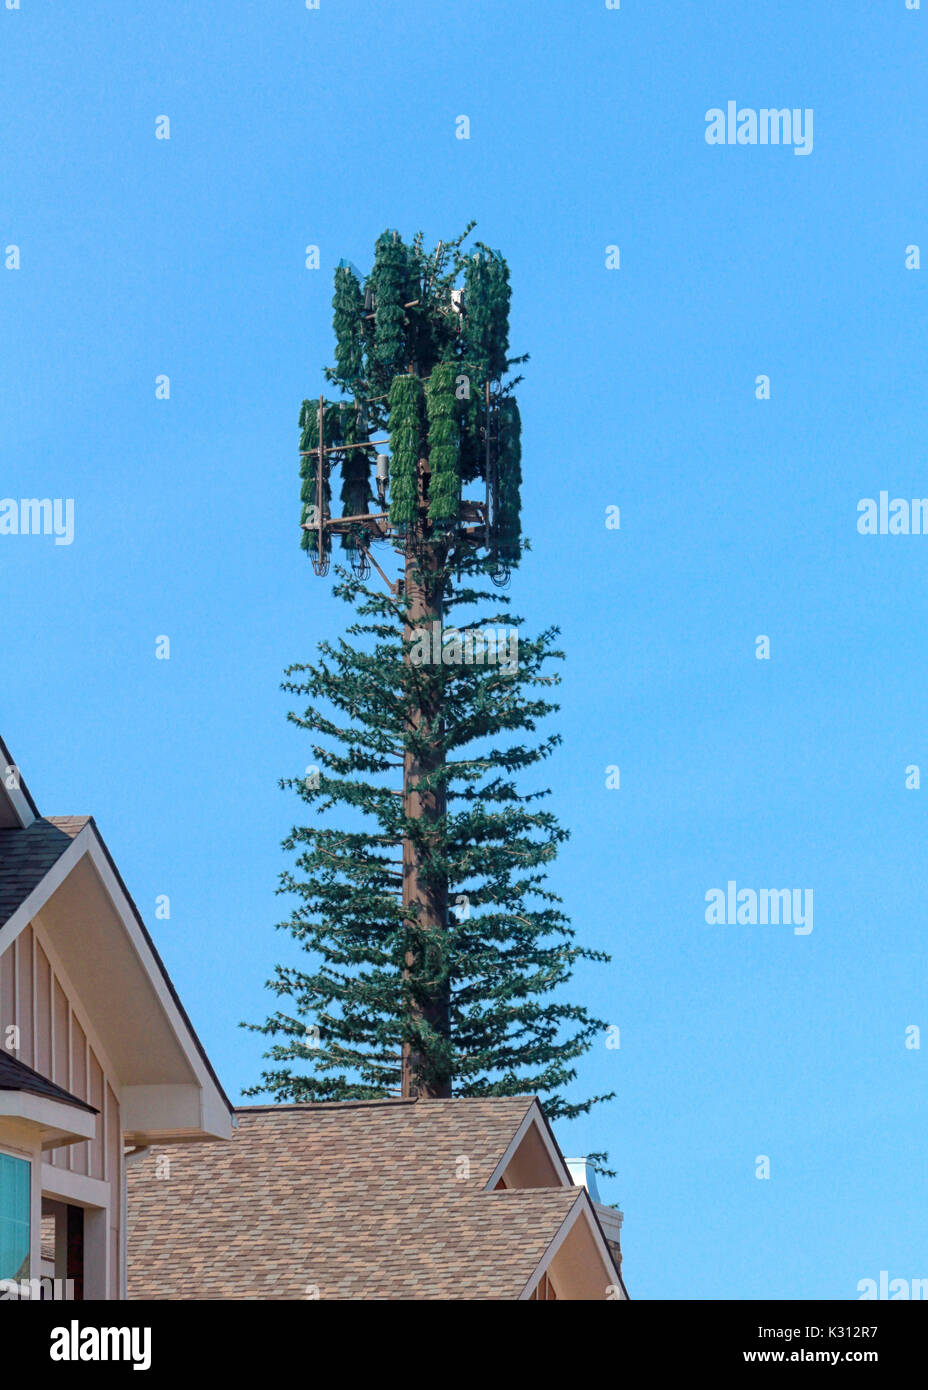 Eine Mitteilung Turm schlecht als Pine Tree steht in einem Wohngebiet Stadtgebiet getarnt. Stockfoto